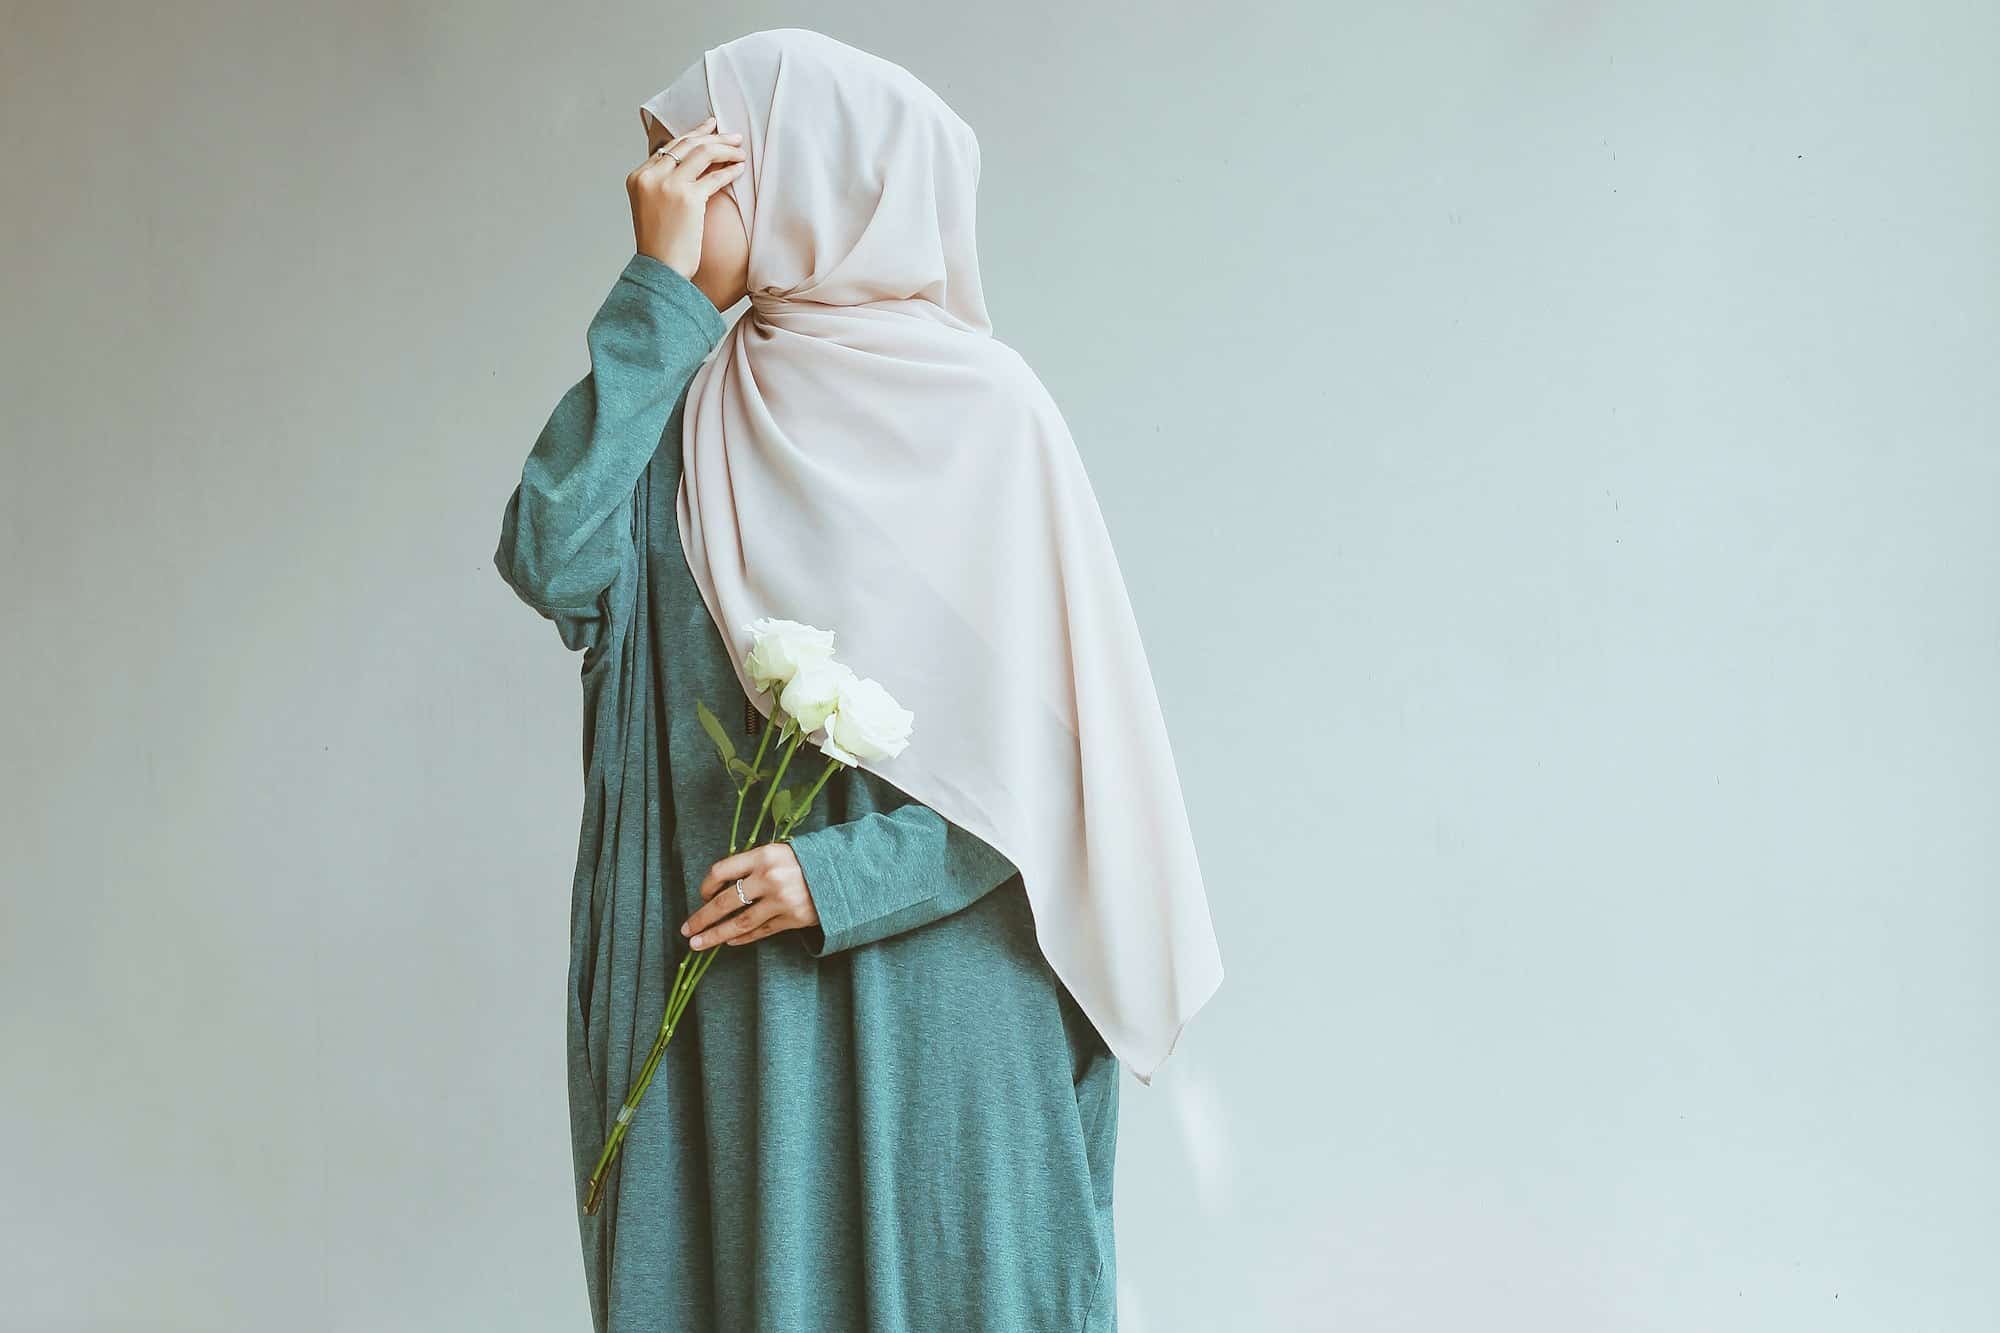 Élégance Modeste: Découvrez les Tendances 2023 en Vêtements Islamiques